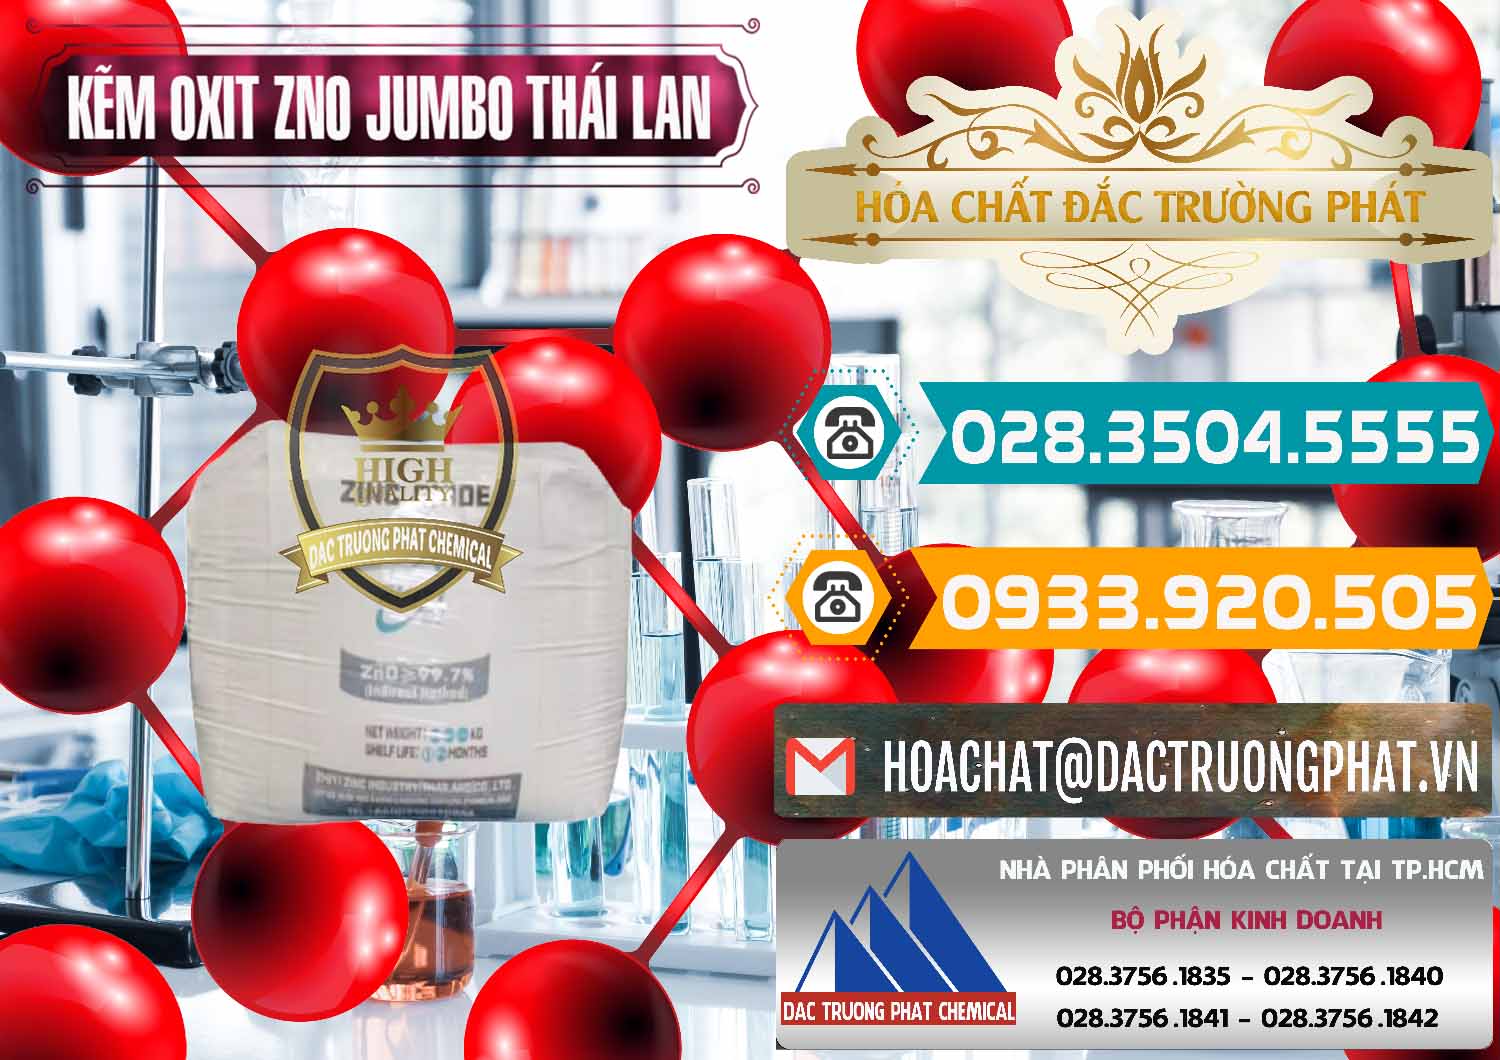 Nhà nhập khẩu - bán Zinc Oxide - Bột Kẽm Oxit ZNO Jumbo Bành Thái Lan Thailand - 0370 - Cung cấp ( kinh doanh ) hóa chất tại TP.HCM - congtyhoachat.vn